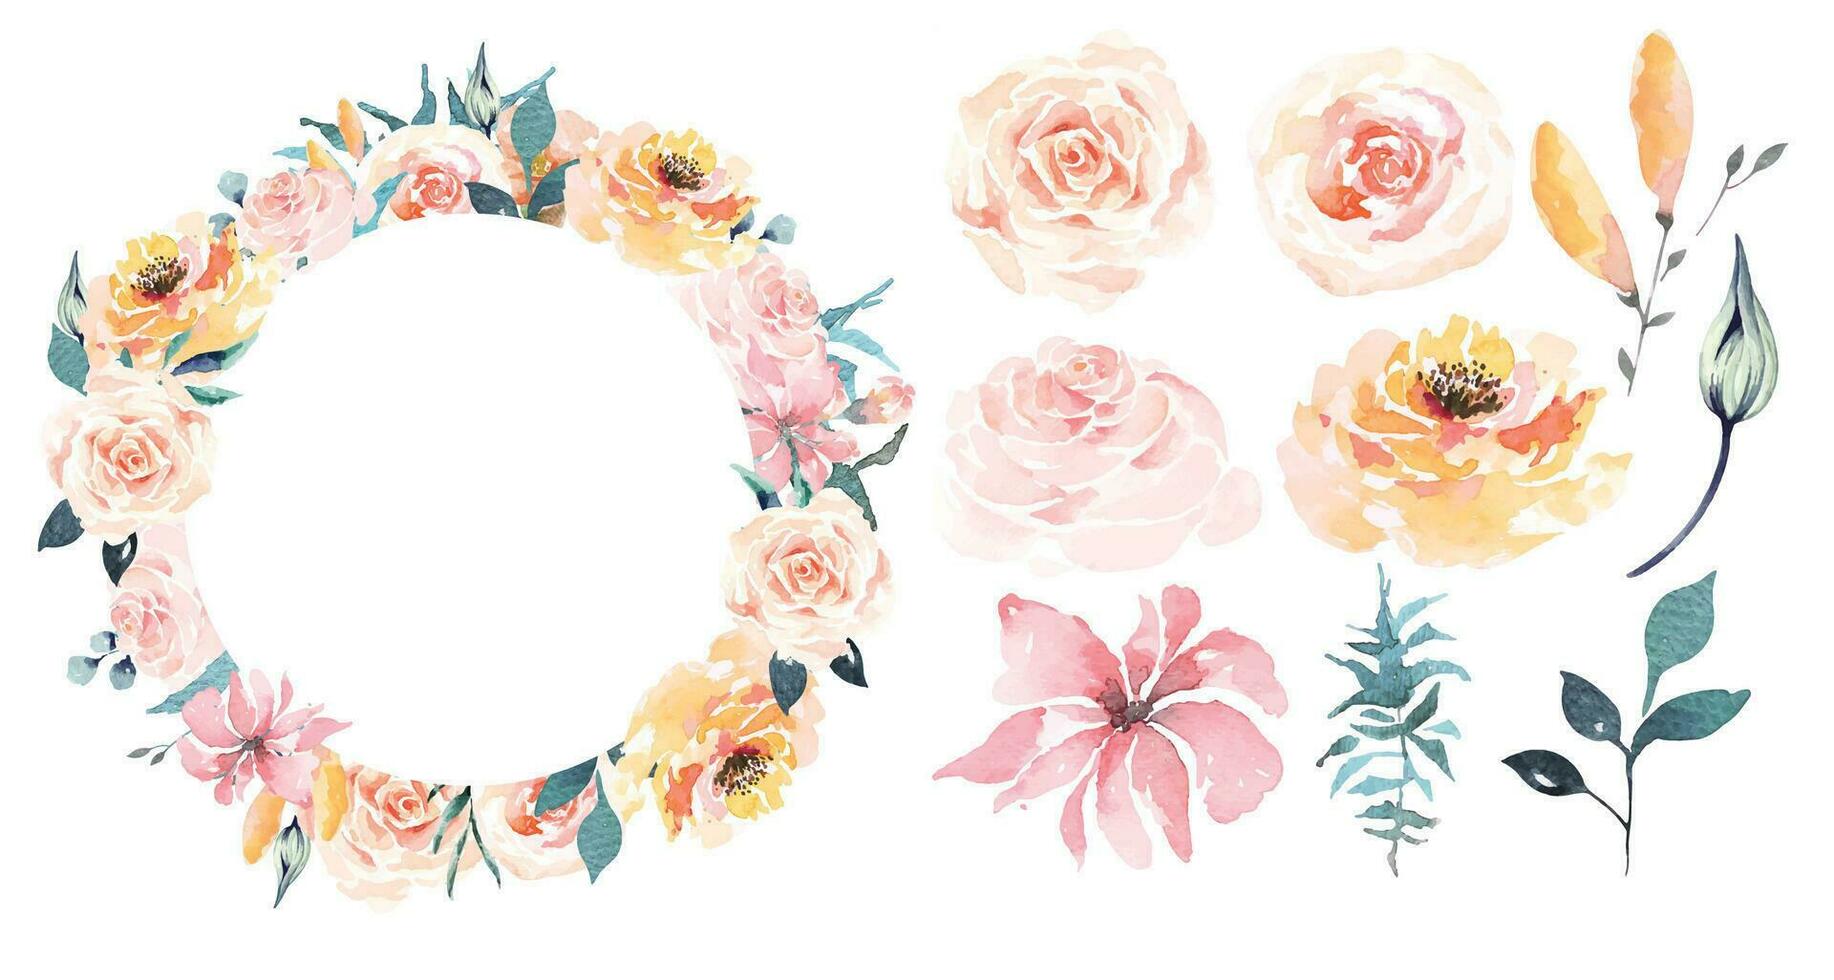 wit bloem krans.roos en bladeren krans geschilderd in aquarel.elegant bloemen verzameling , bloem arrangementen.ontwerp voor uitnodiging, bruiloft of groet kaarten.bloem cirkel. vector